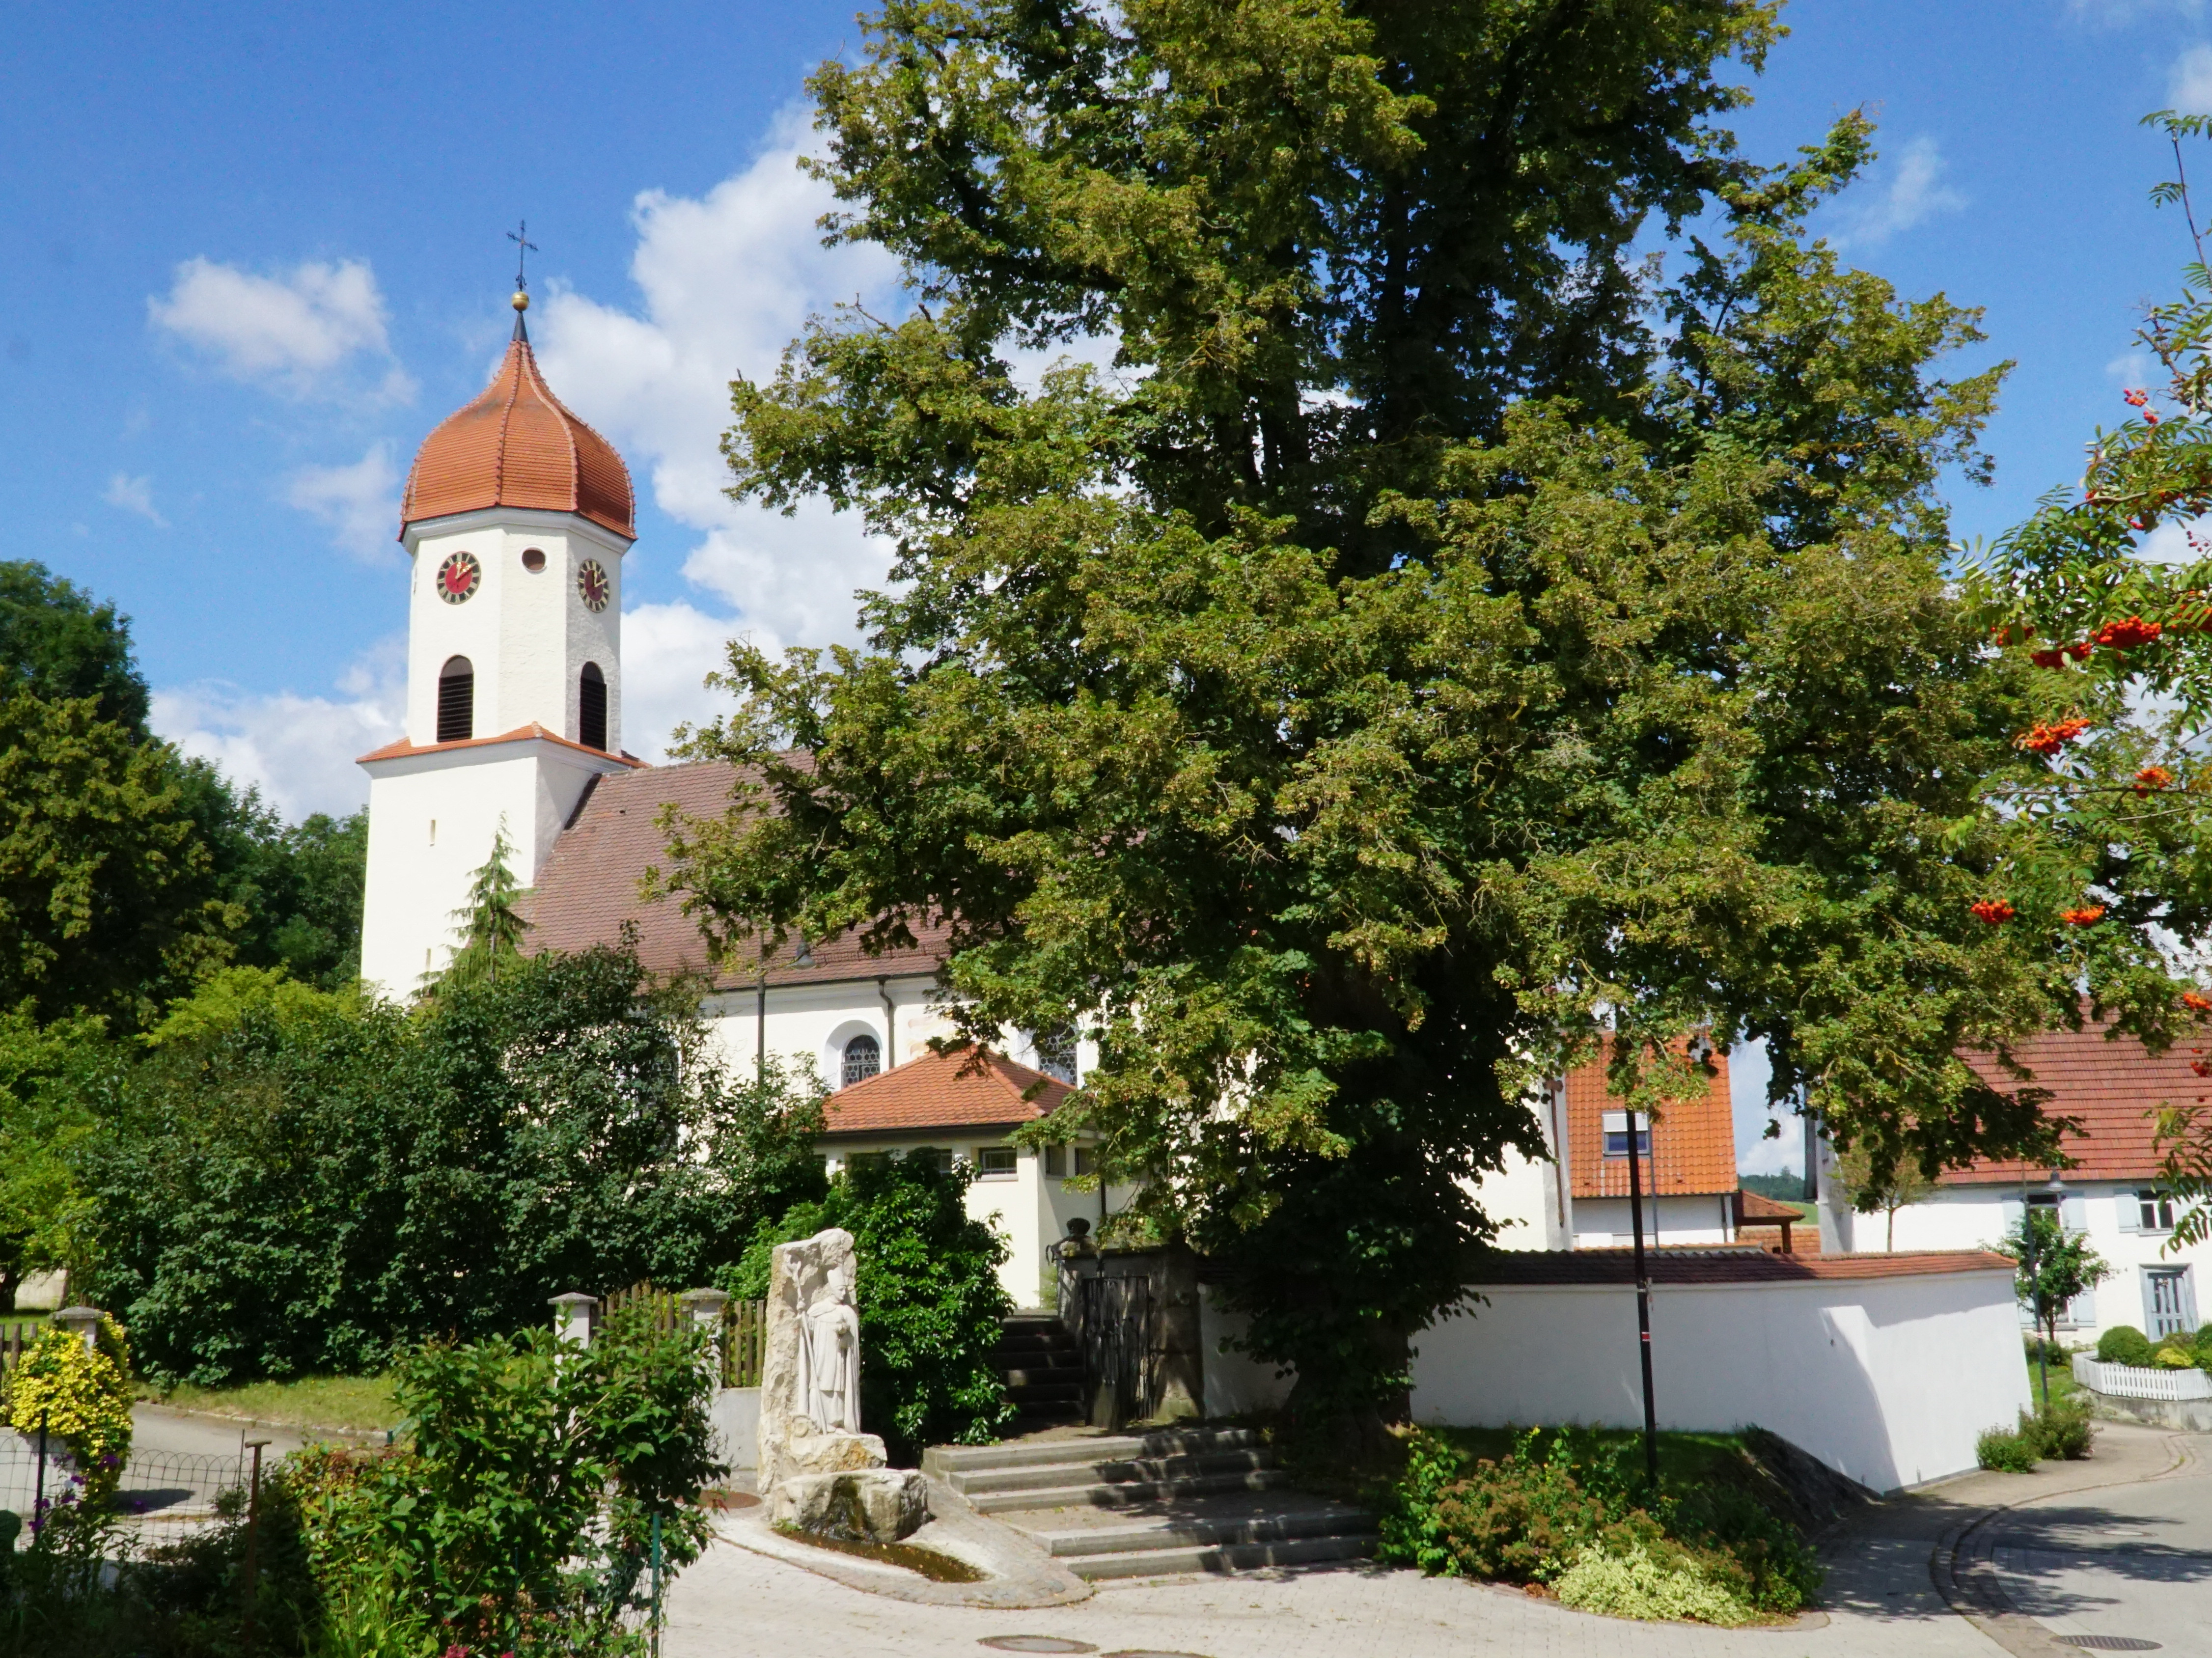  Kirche Uigendorf 